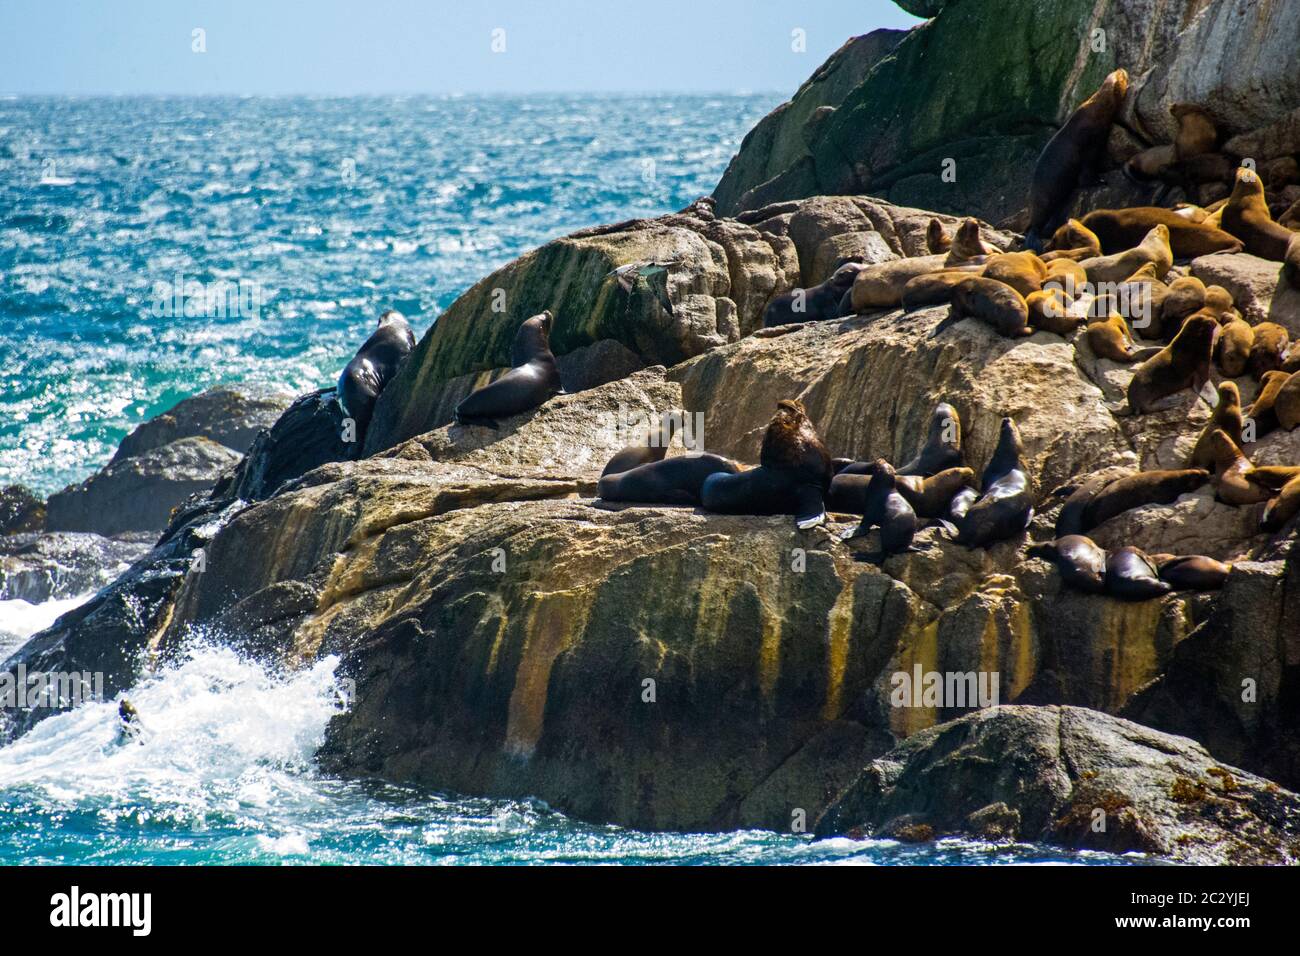 Colonie de lions de mer d'Amérique du Sud (Otaria flavescens) reposant sur des rochers côtiers, Patagonie, Chili, Amérique du Sud Banque D'Images